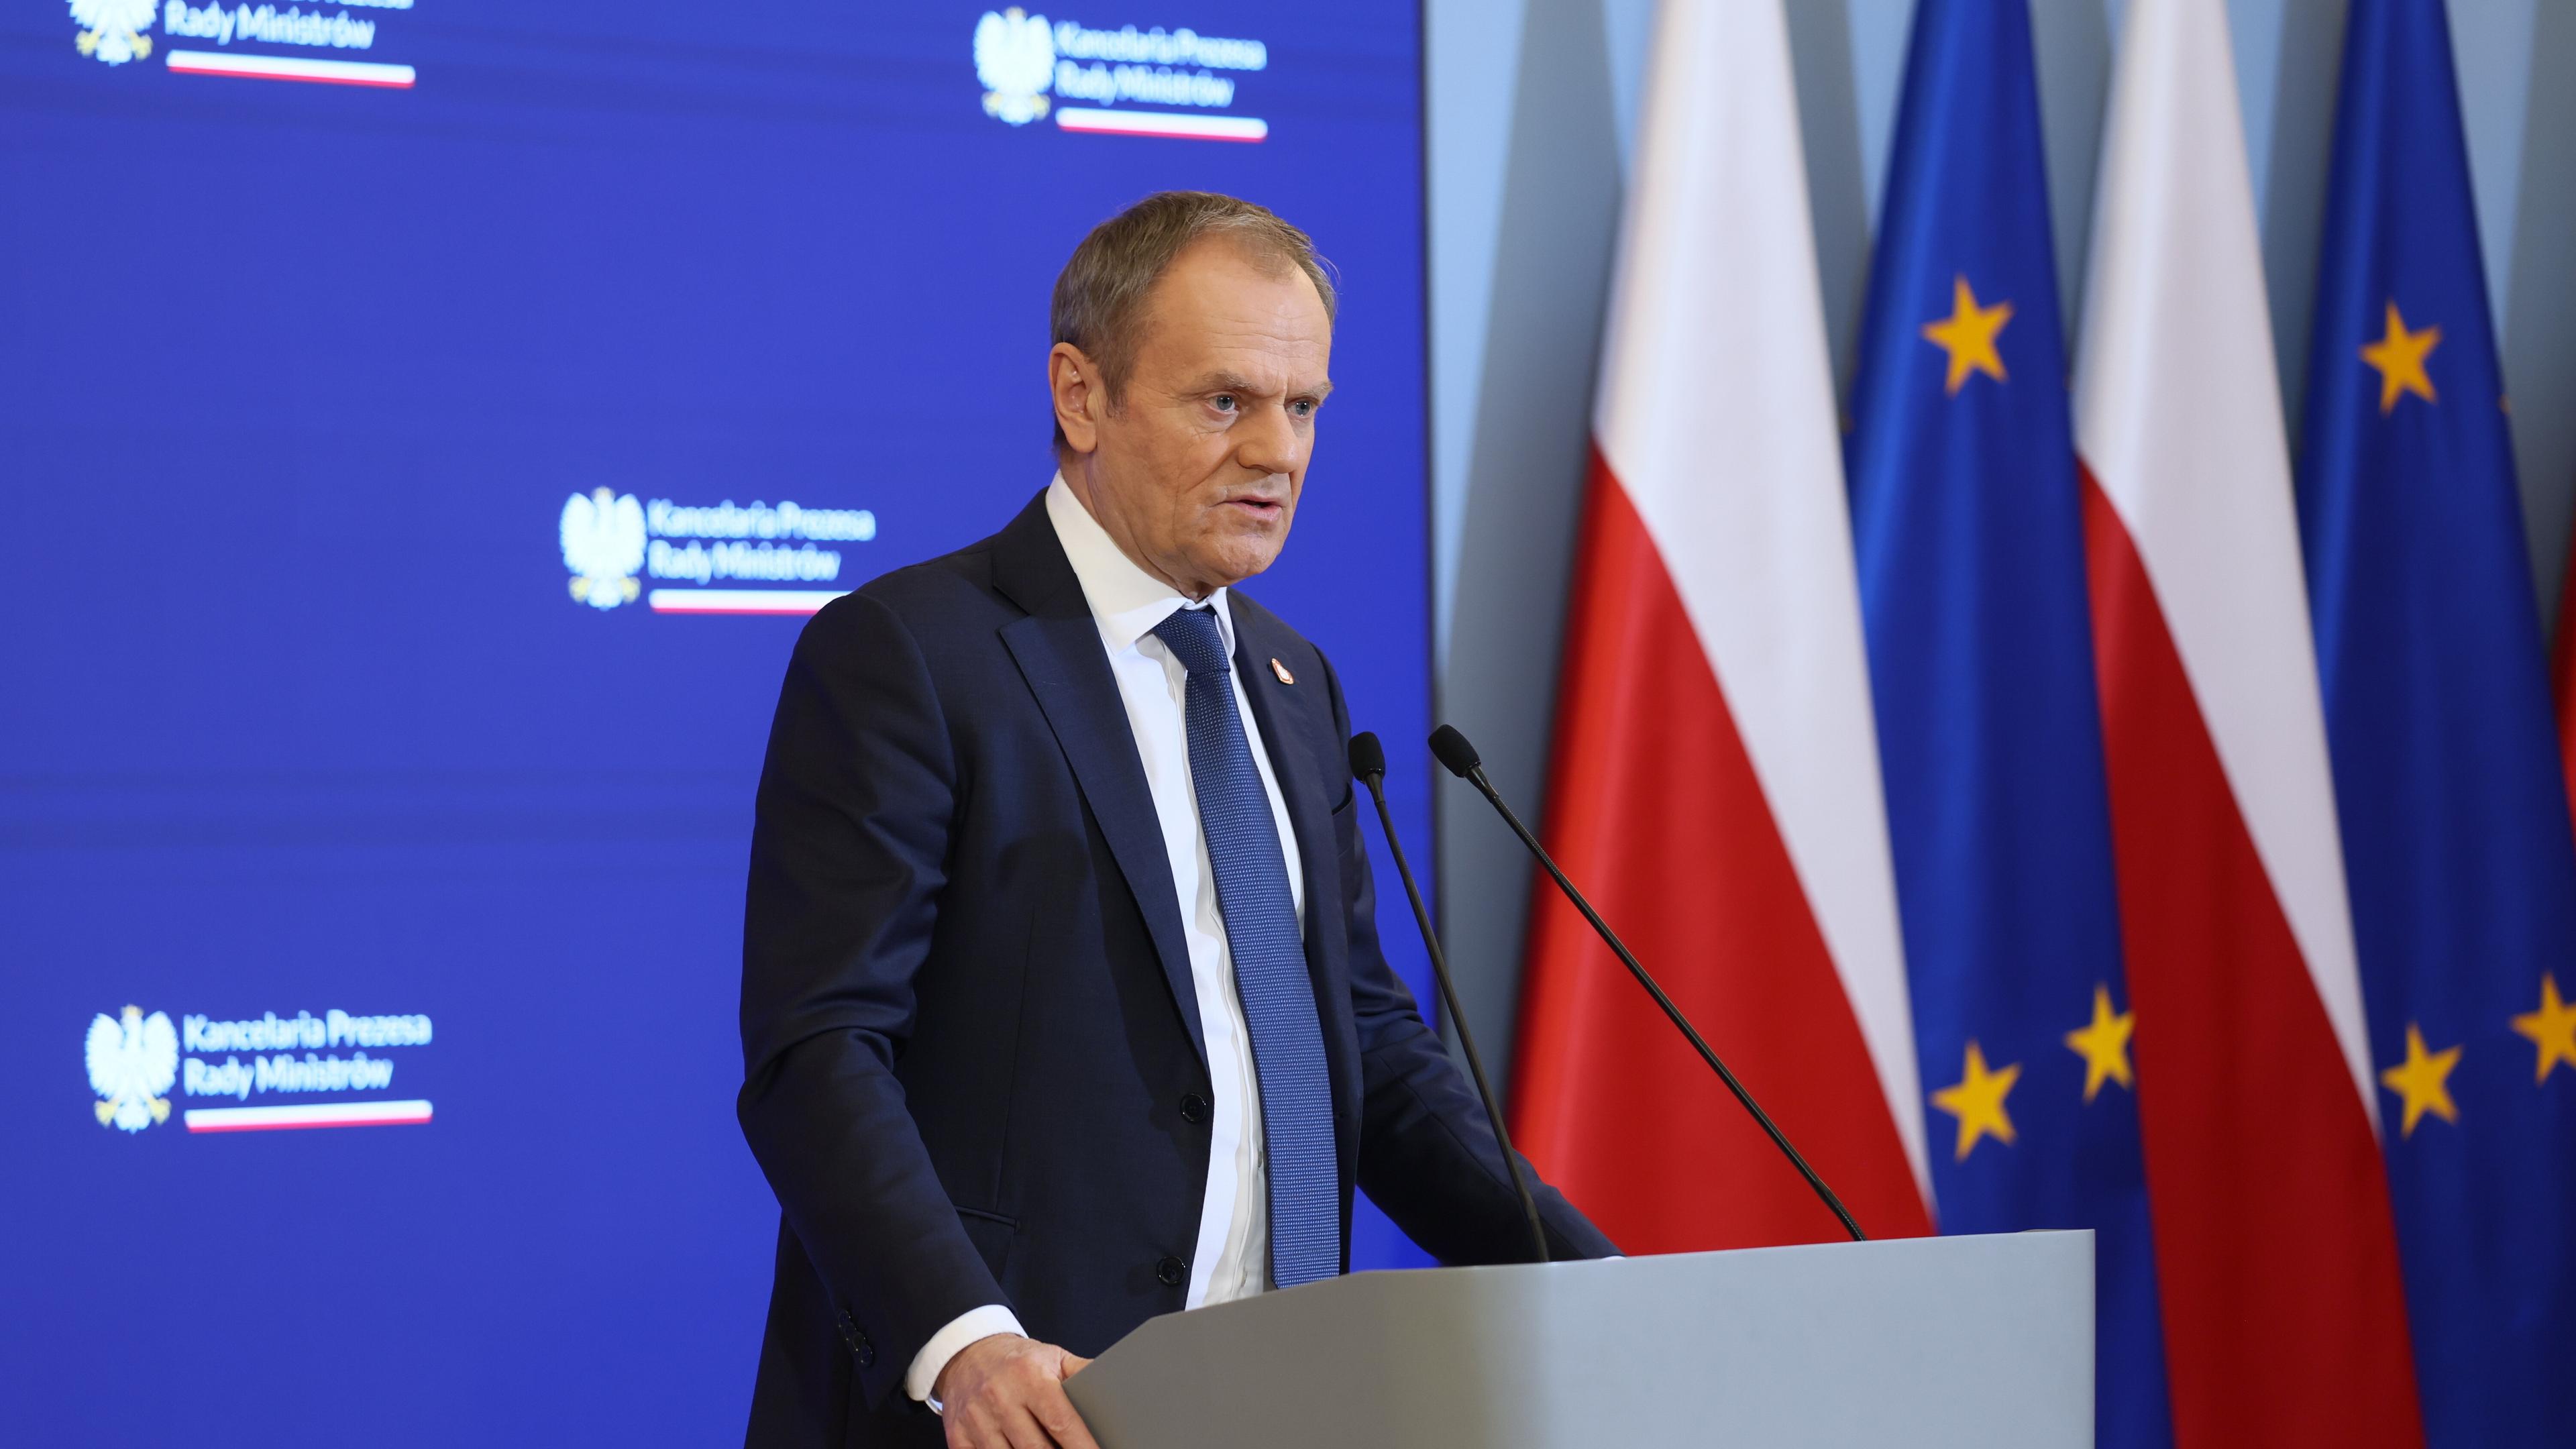 Polens Ministerpräsident Tusk gestern bei einer PK. Im Hintergrund die Flaggen Polens und der EU.